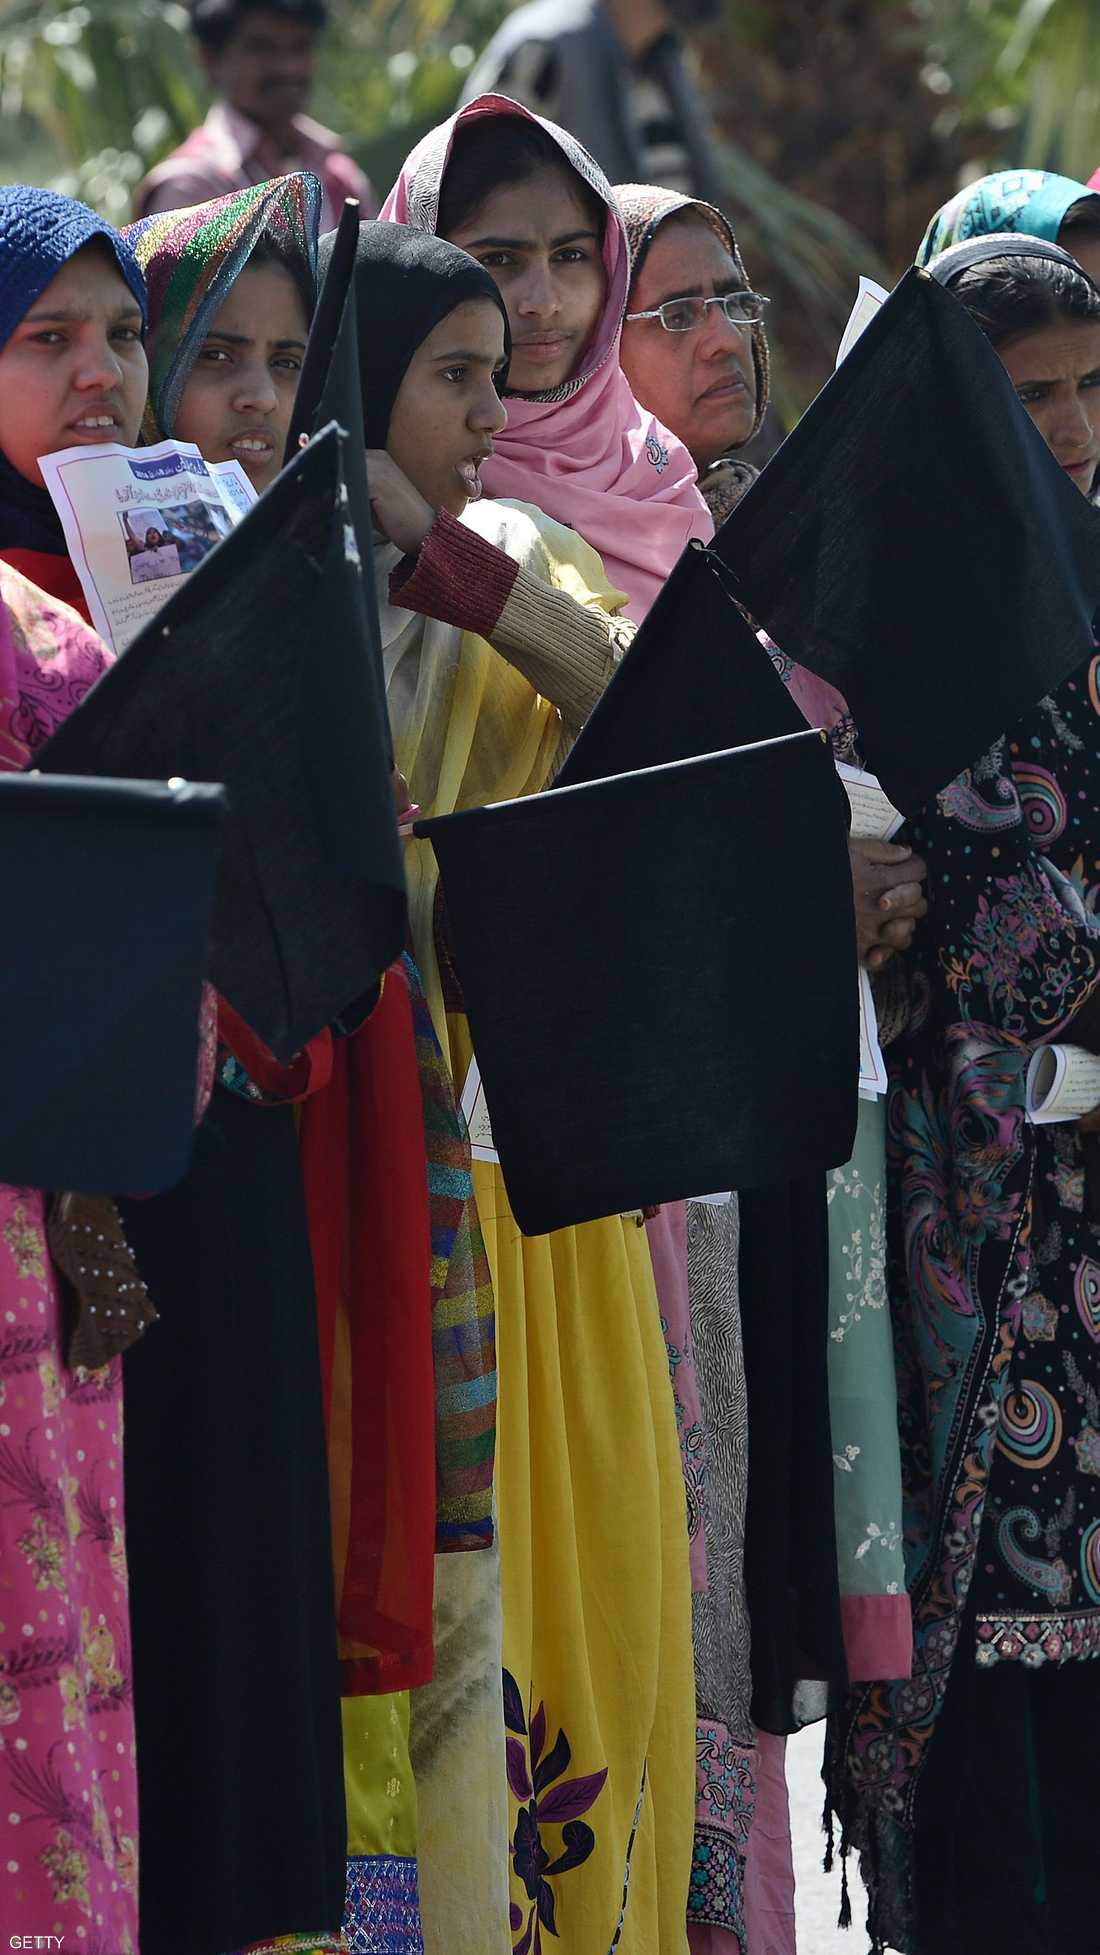 ناشطات باكستانيات يحملن أعلام سوداء احتجاجا على أوضاع المرأة أثناء مشاركتهن في مسيرة بإسلام آباد.